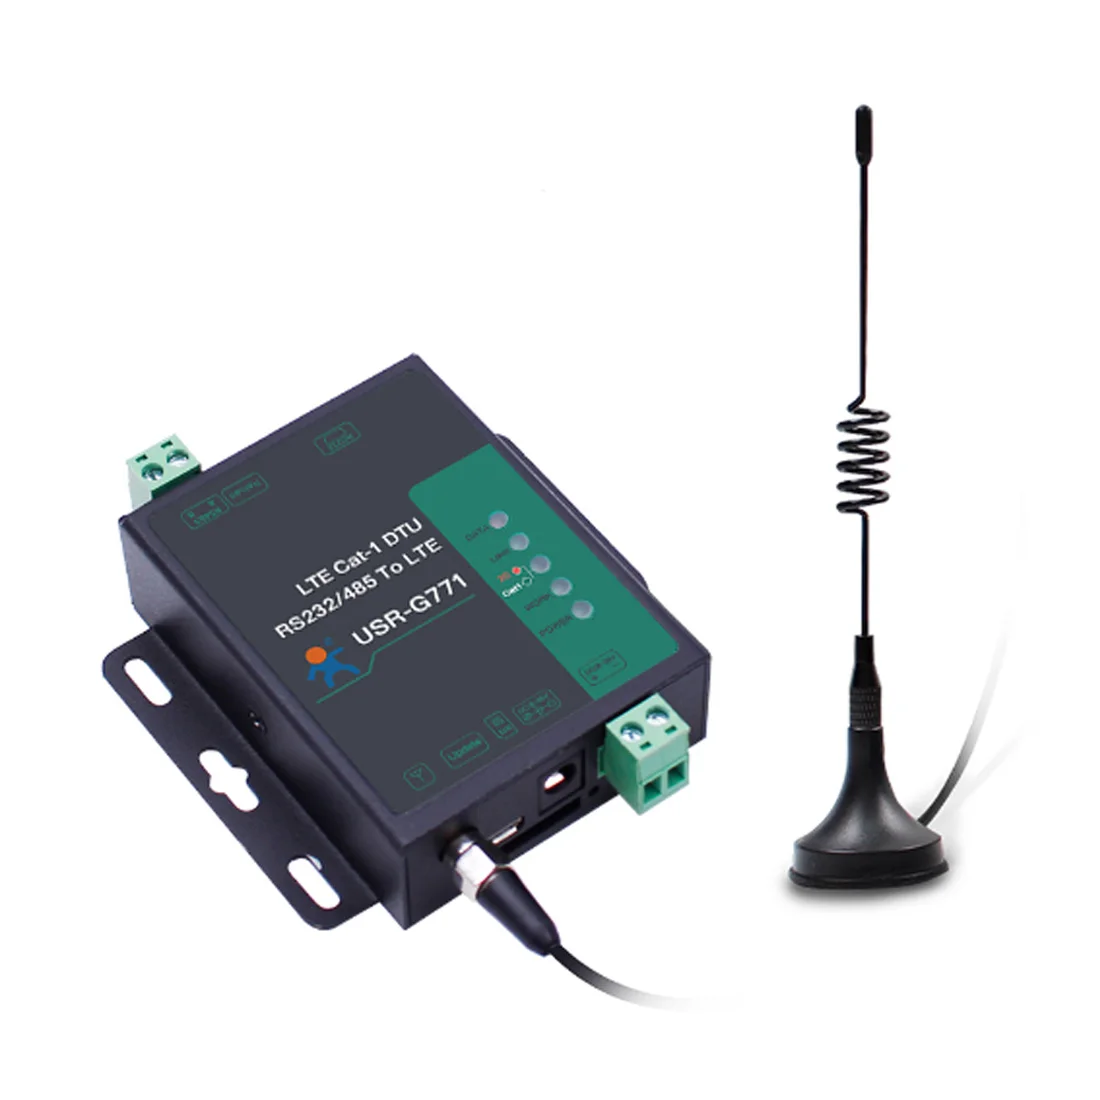 

USR-G771-E LTE CAT 1 сотовый модем, порты LTE и GSM, TCP, UDP Прозрачная передача, SIM-карта RS232 RS485, последовательный порт к Cat 1